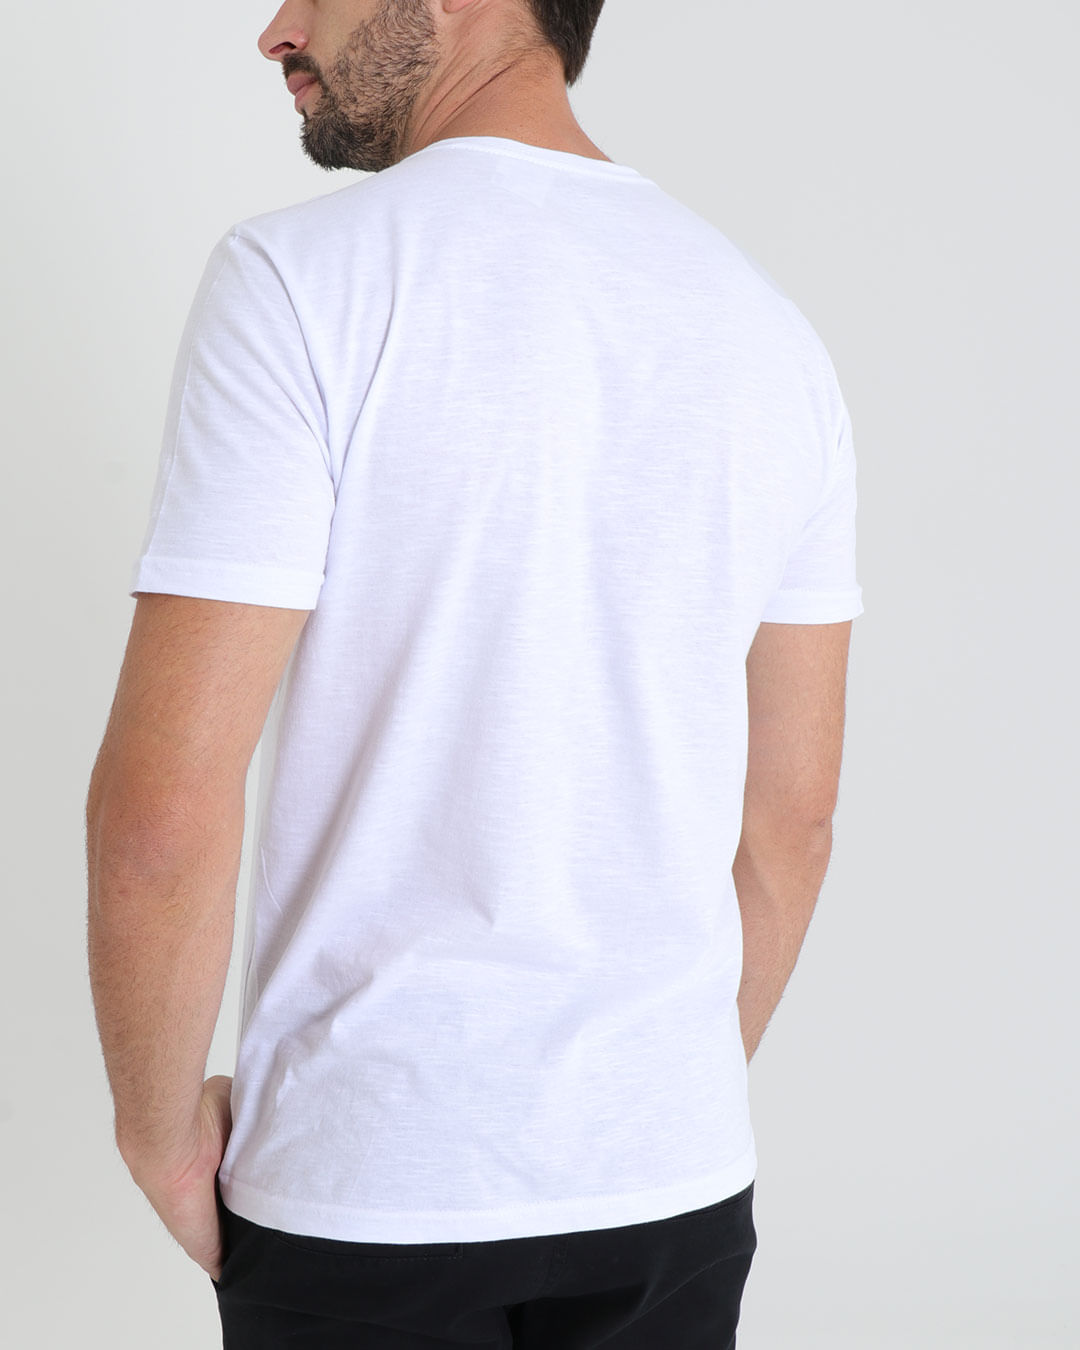 Camiseta-Ref-81204-Flame-Branco---Branco